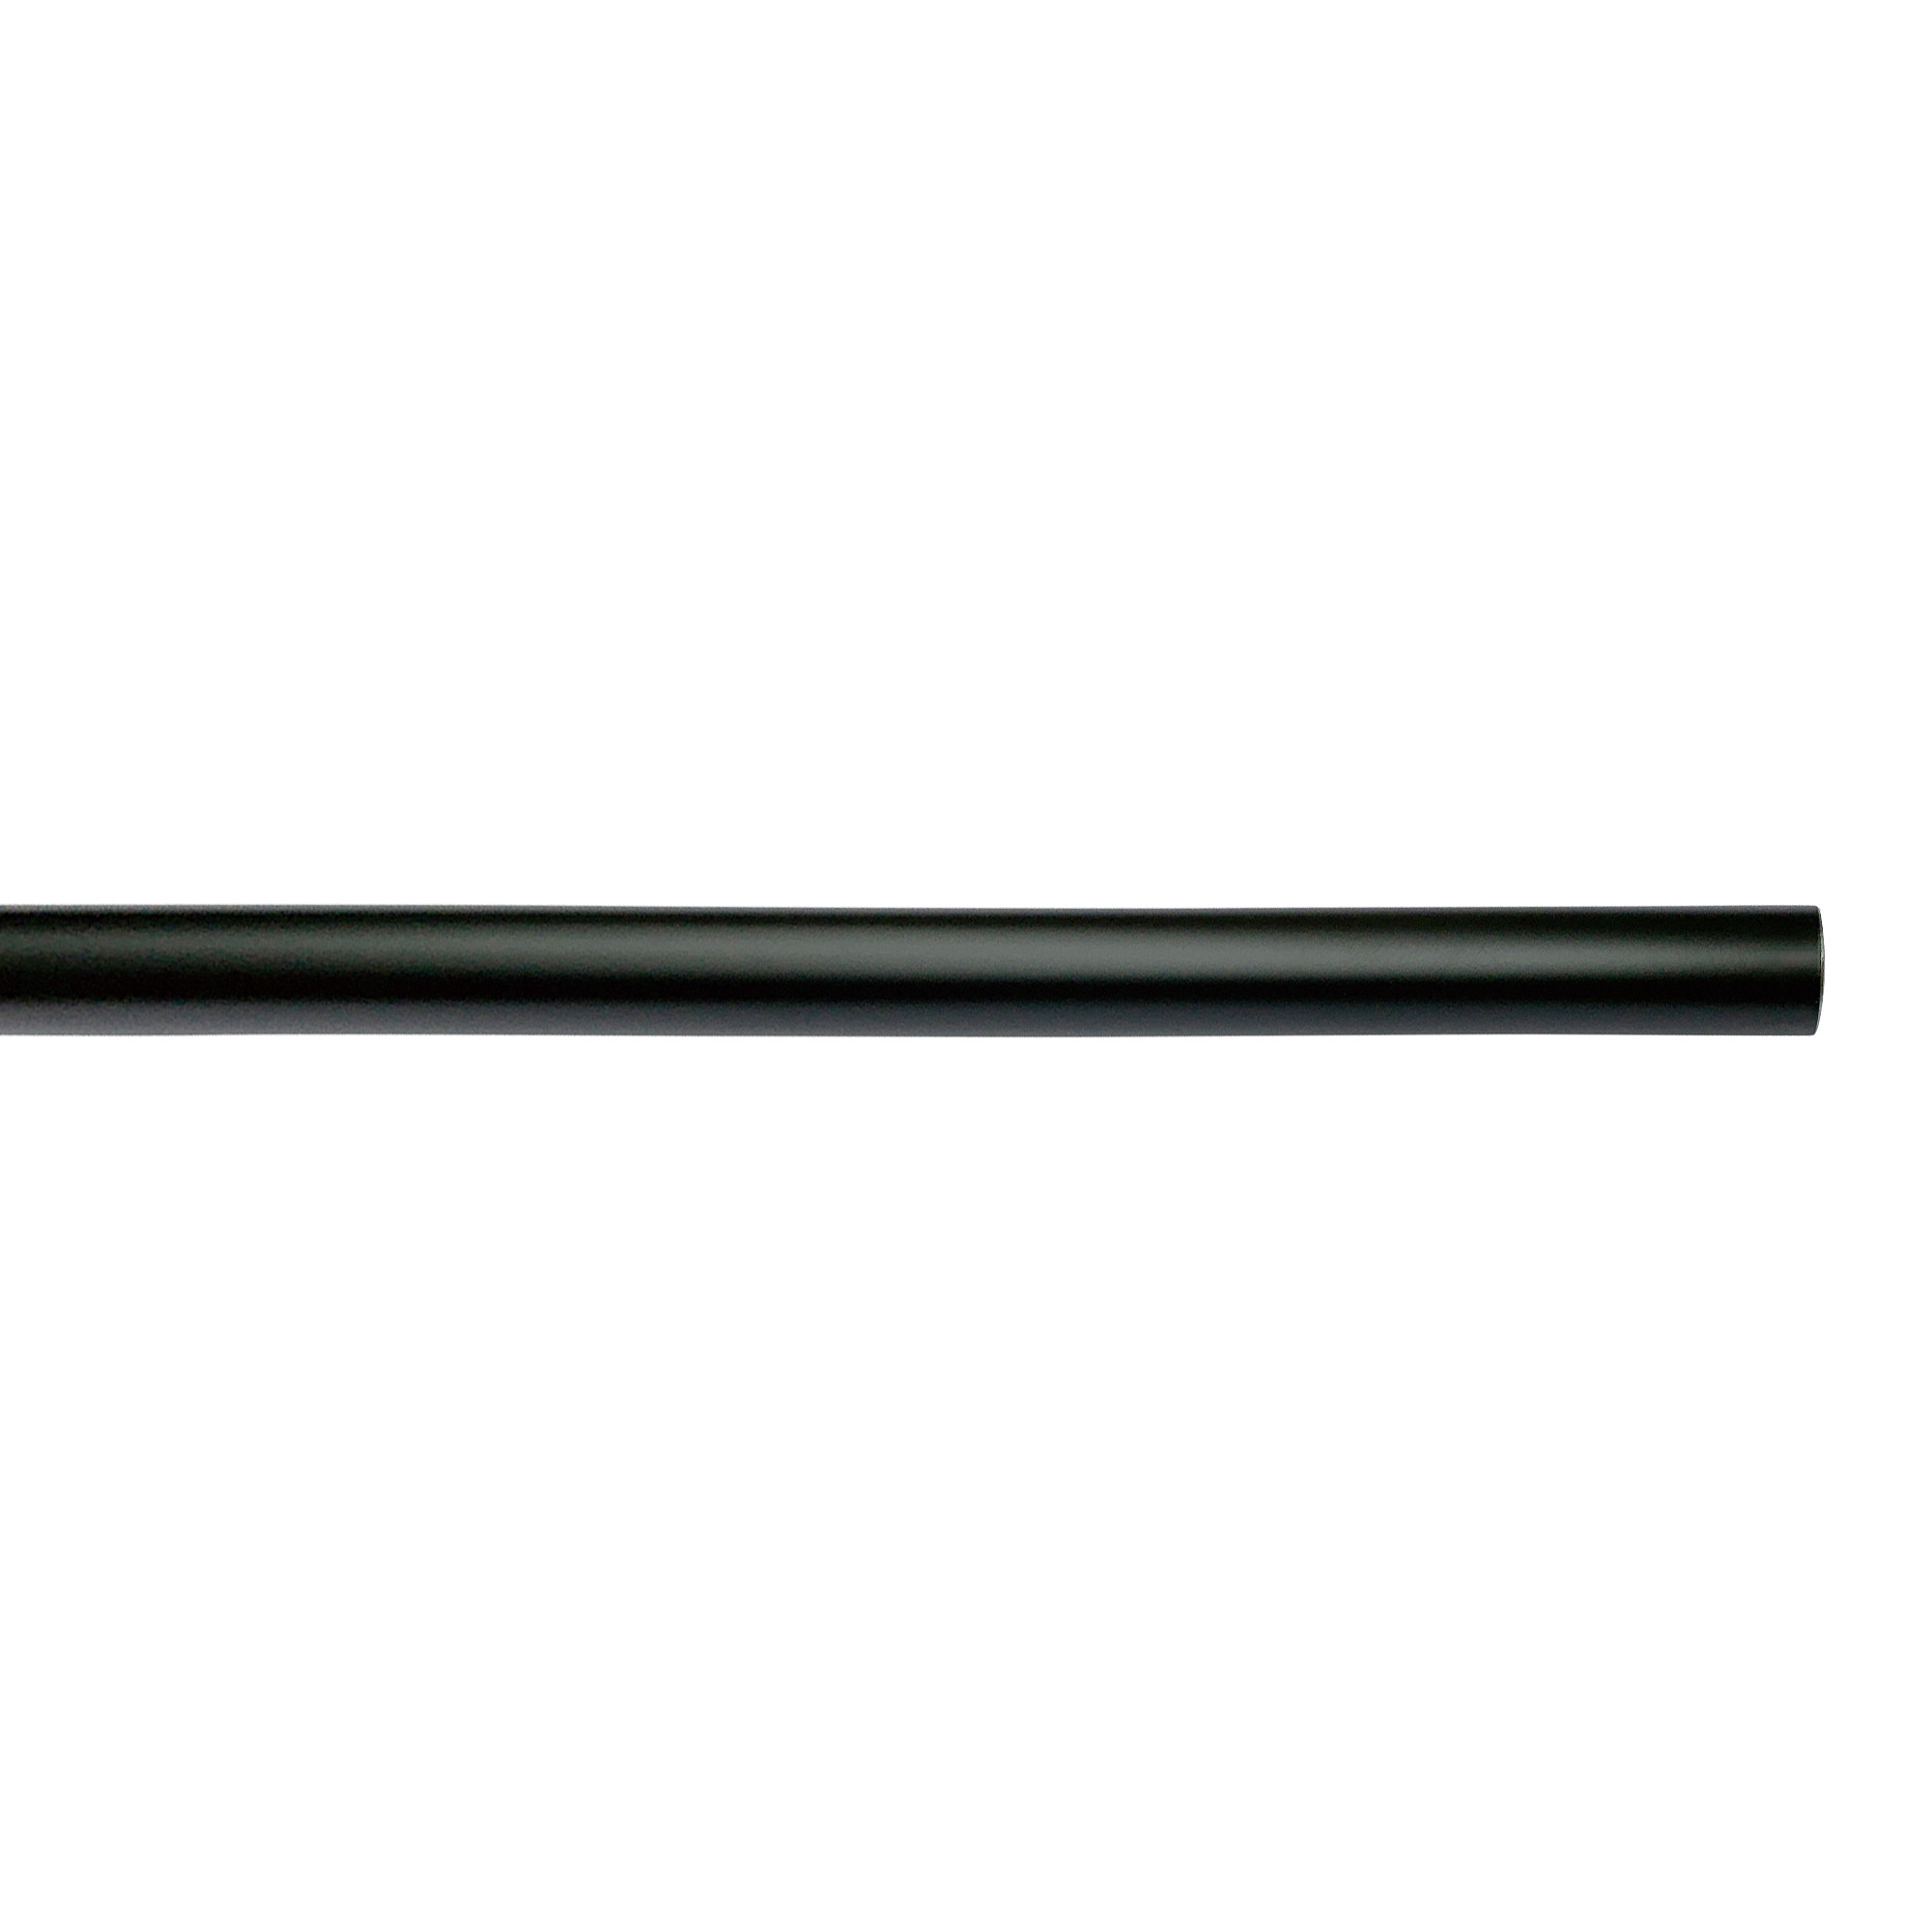 アイアンハンガーパイプ F型-天井吊タイプ H300 ブラック PS-HB008-71-G141 水平パイプは3サイズから2本、それぞれお好きな長さを選択可能です